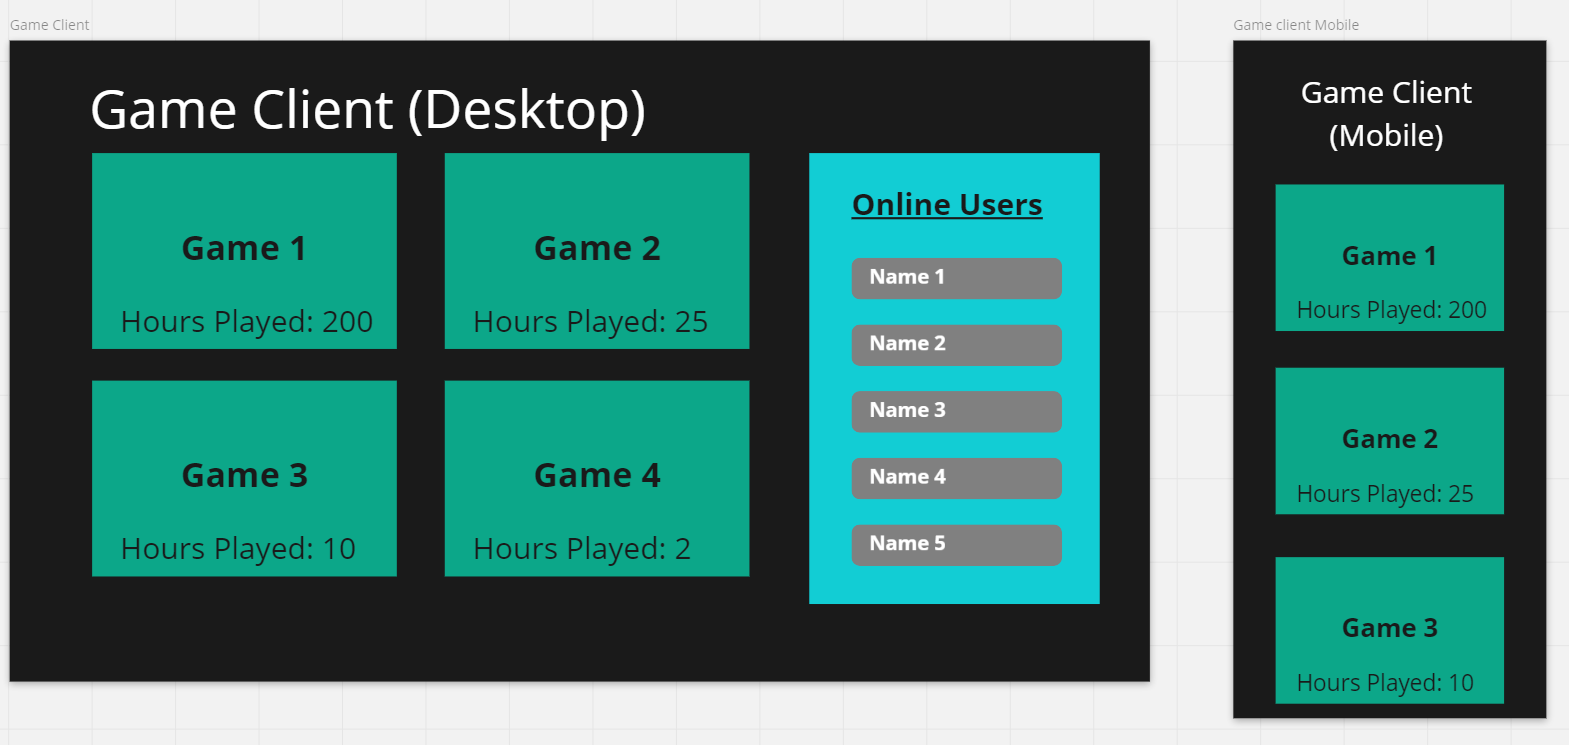 UI of Game Client App